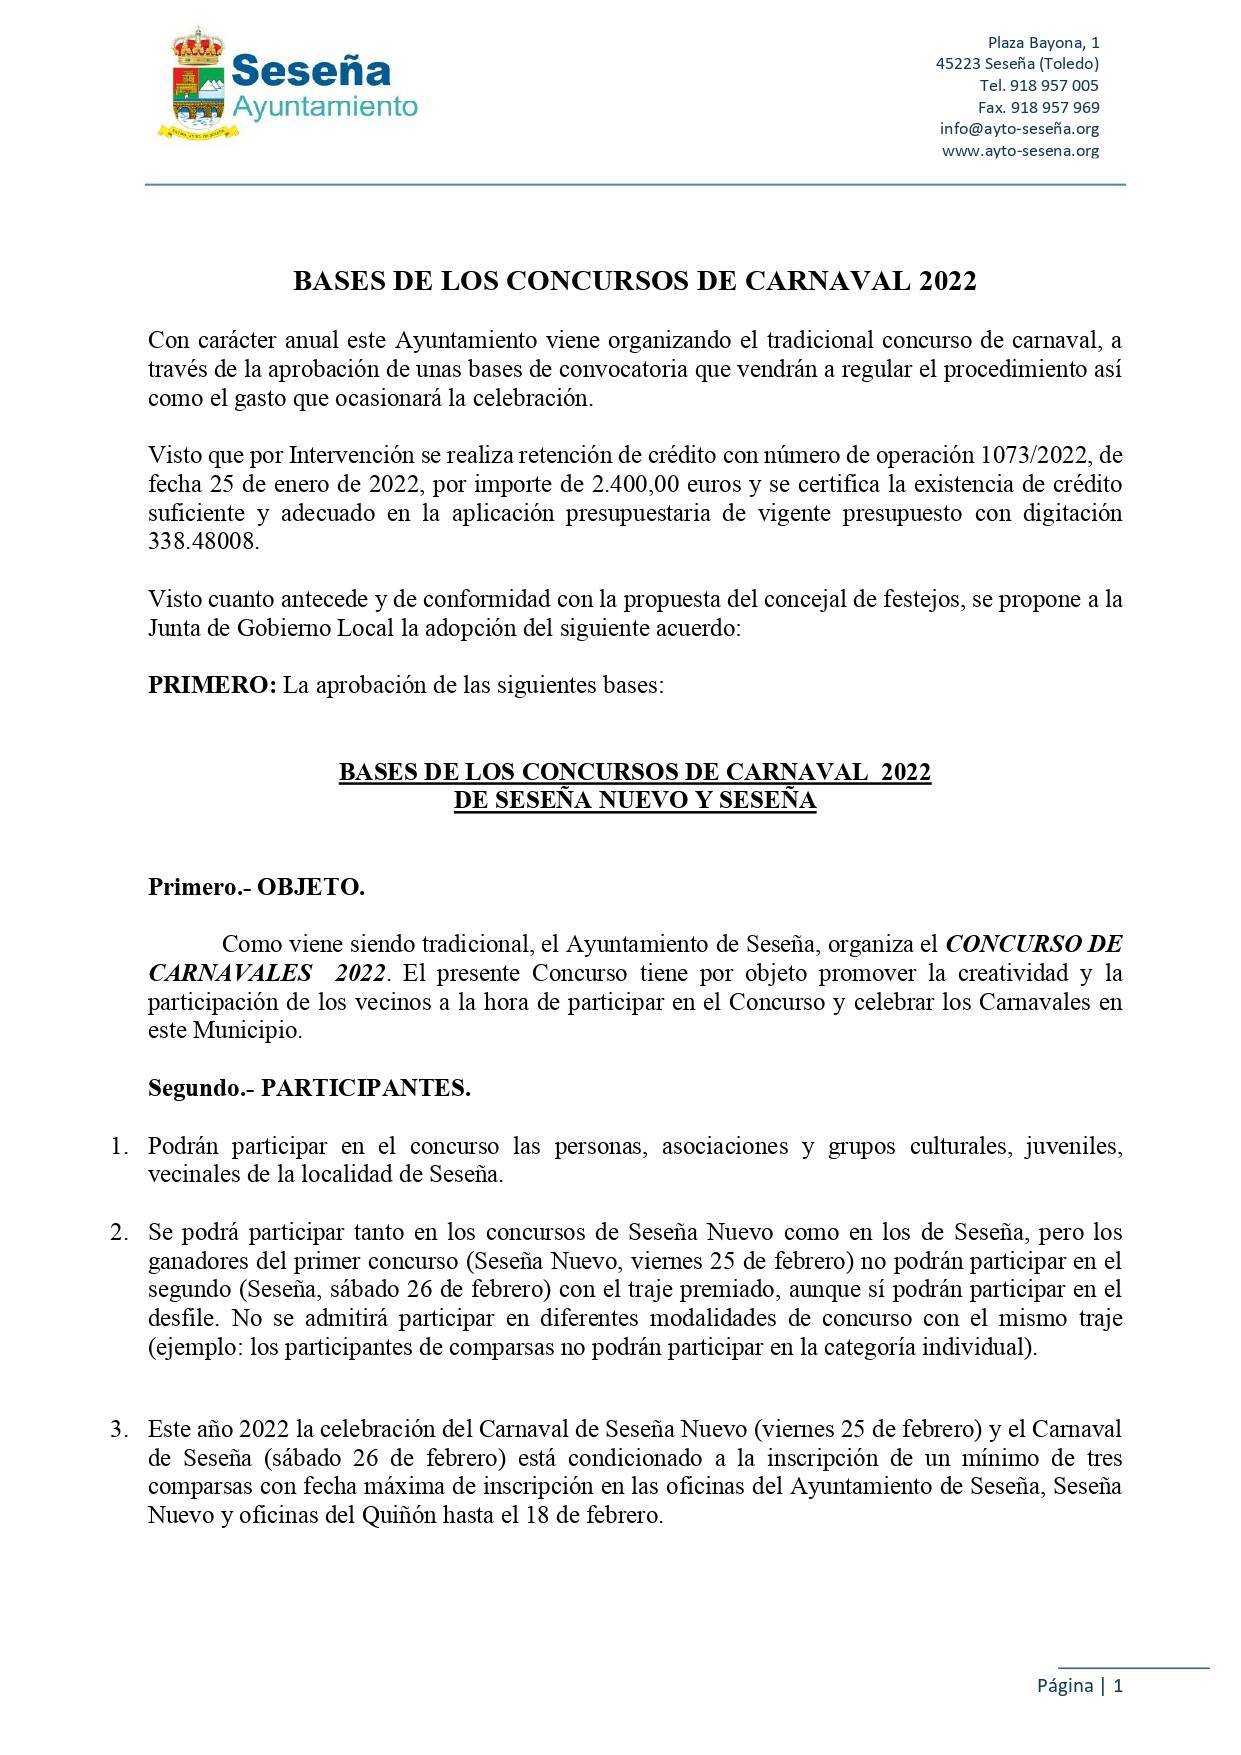 Bases de los concursos de Carnaval (2022) - Seseña (Toledo) 1